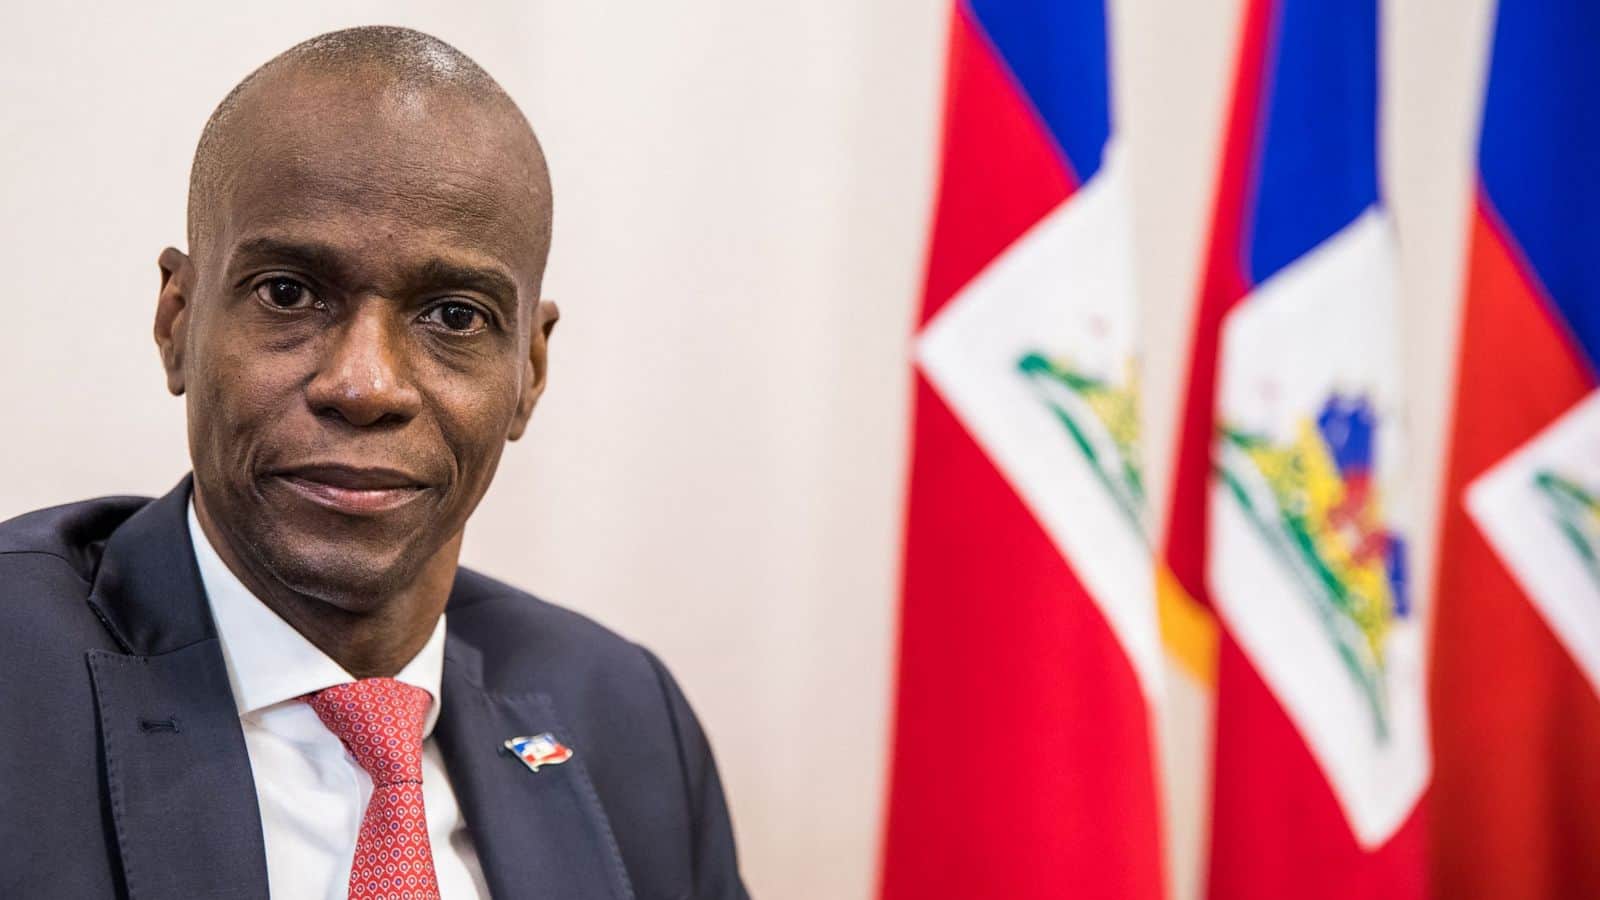 Haitian police kill 4 suspects, detain 2 over murder of President